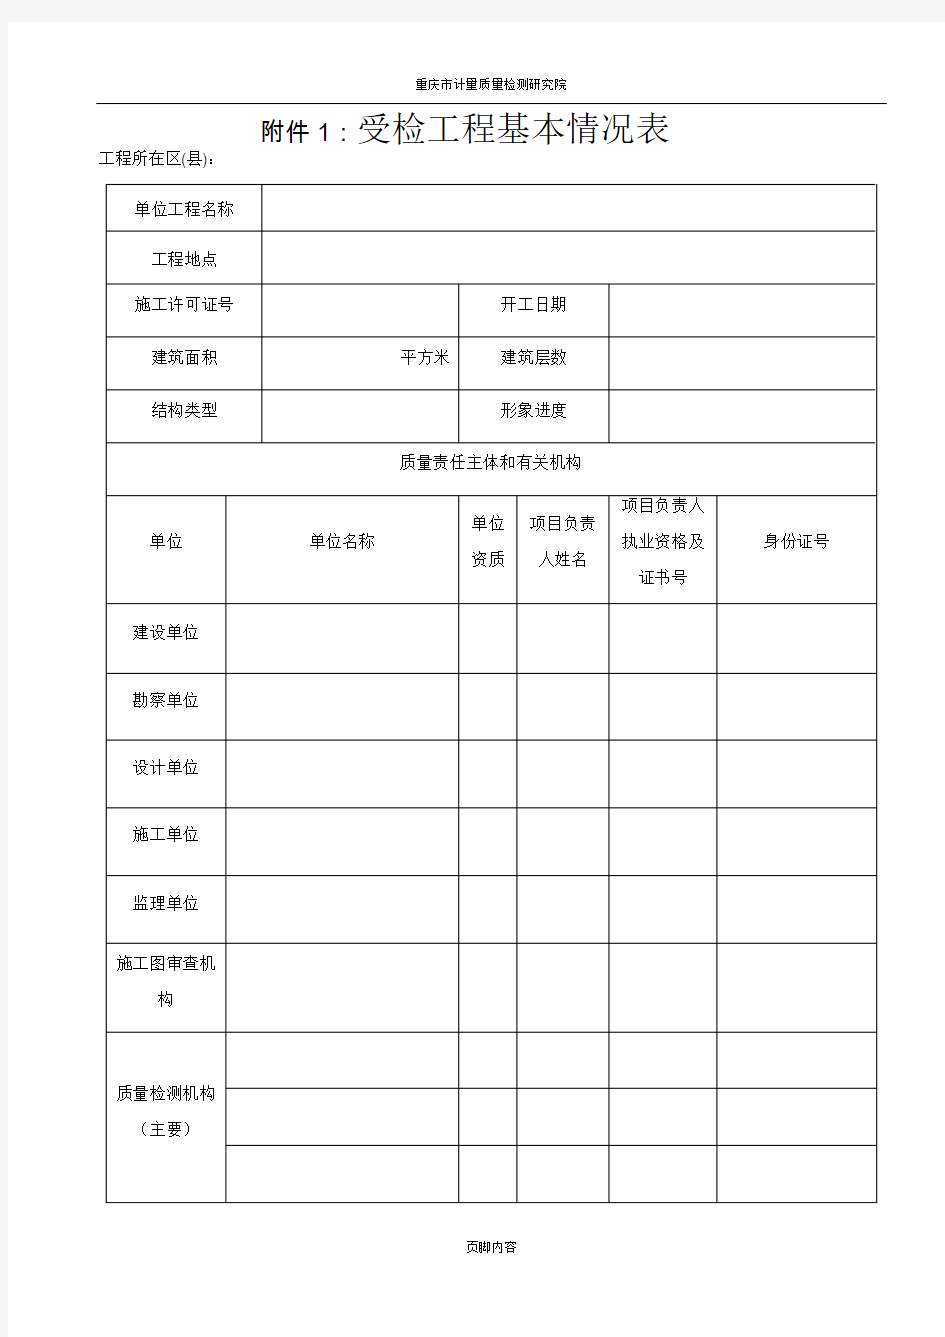 重庆市质量监督检查用表